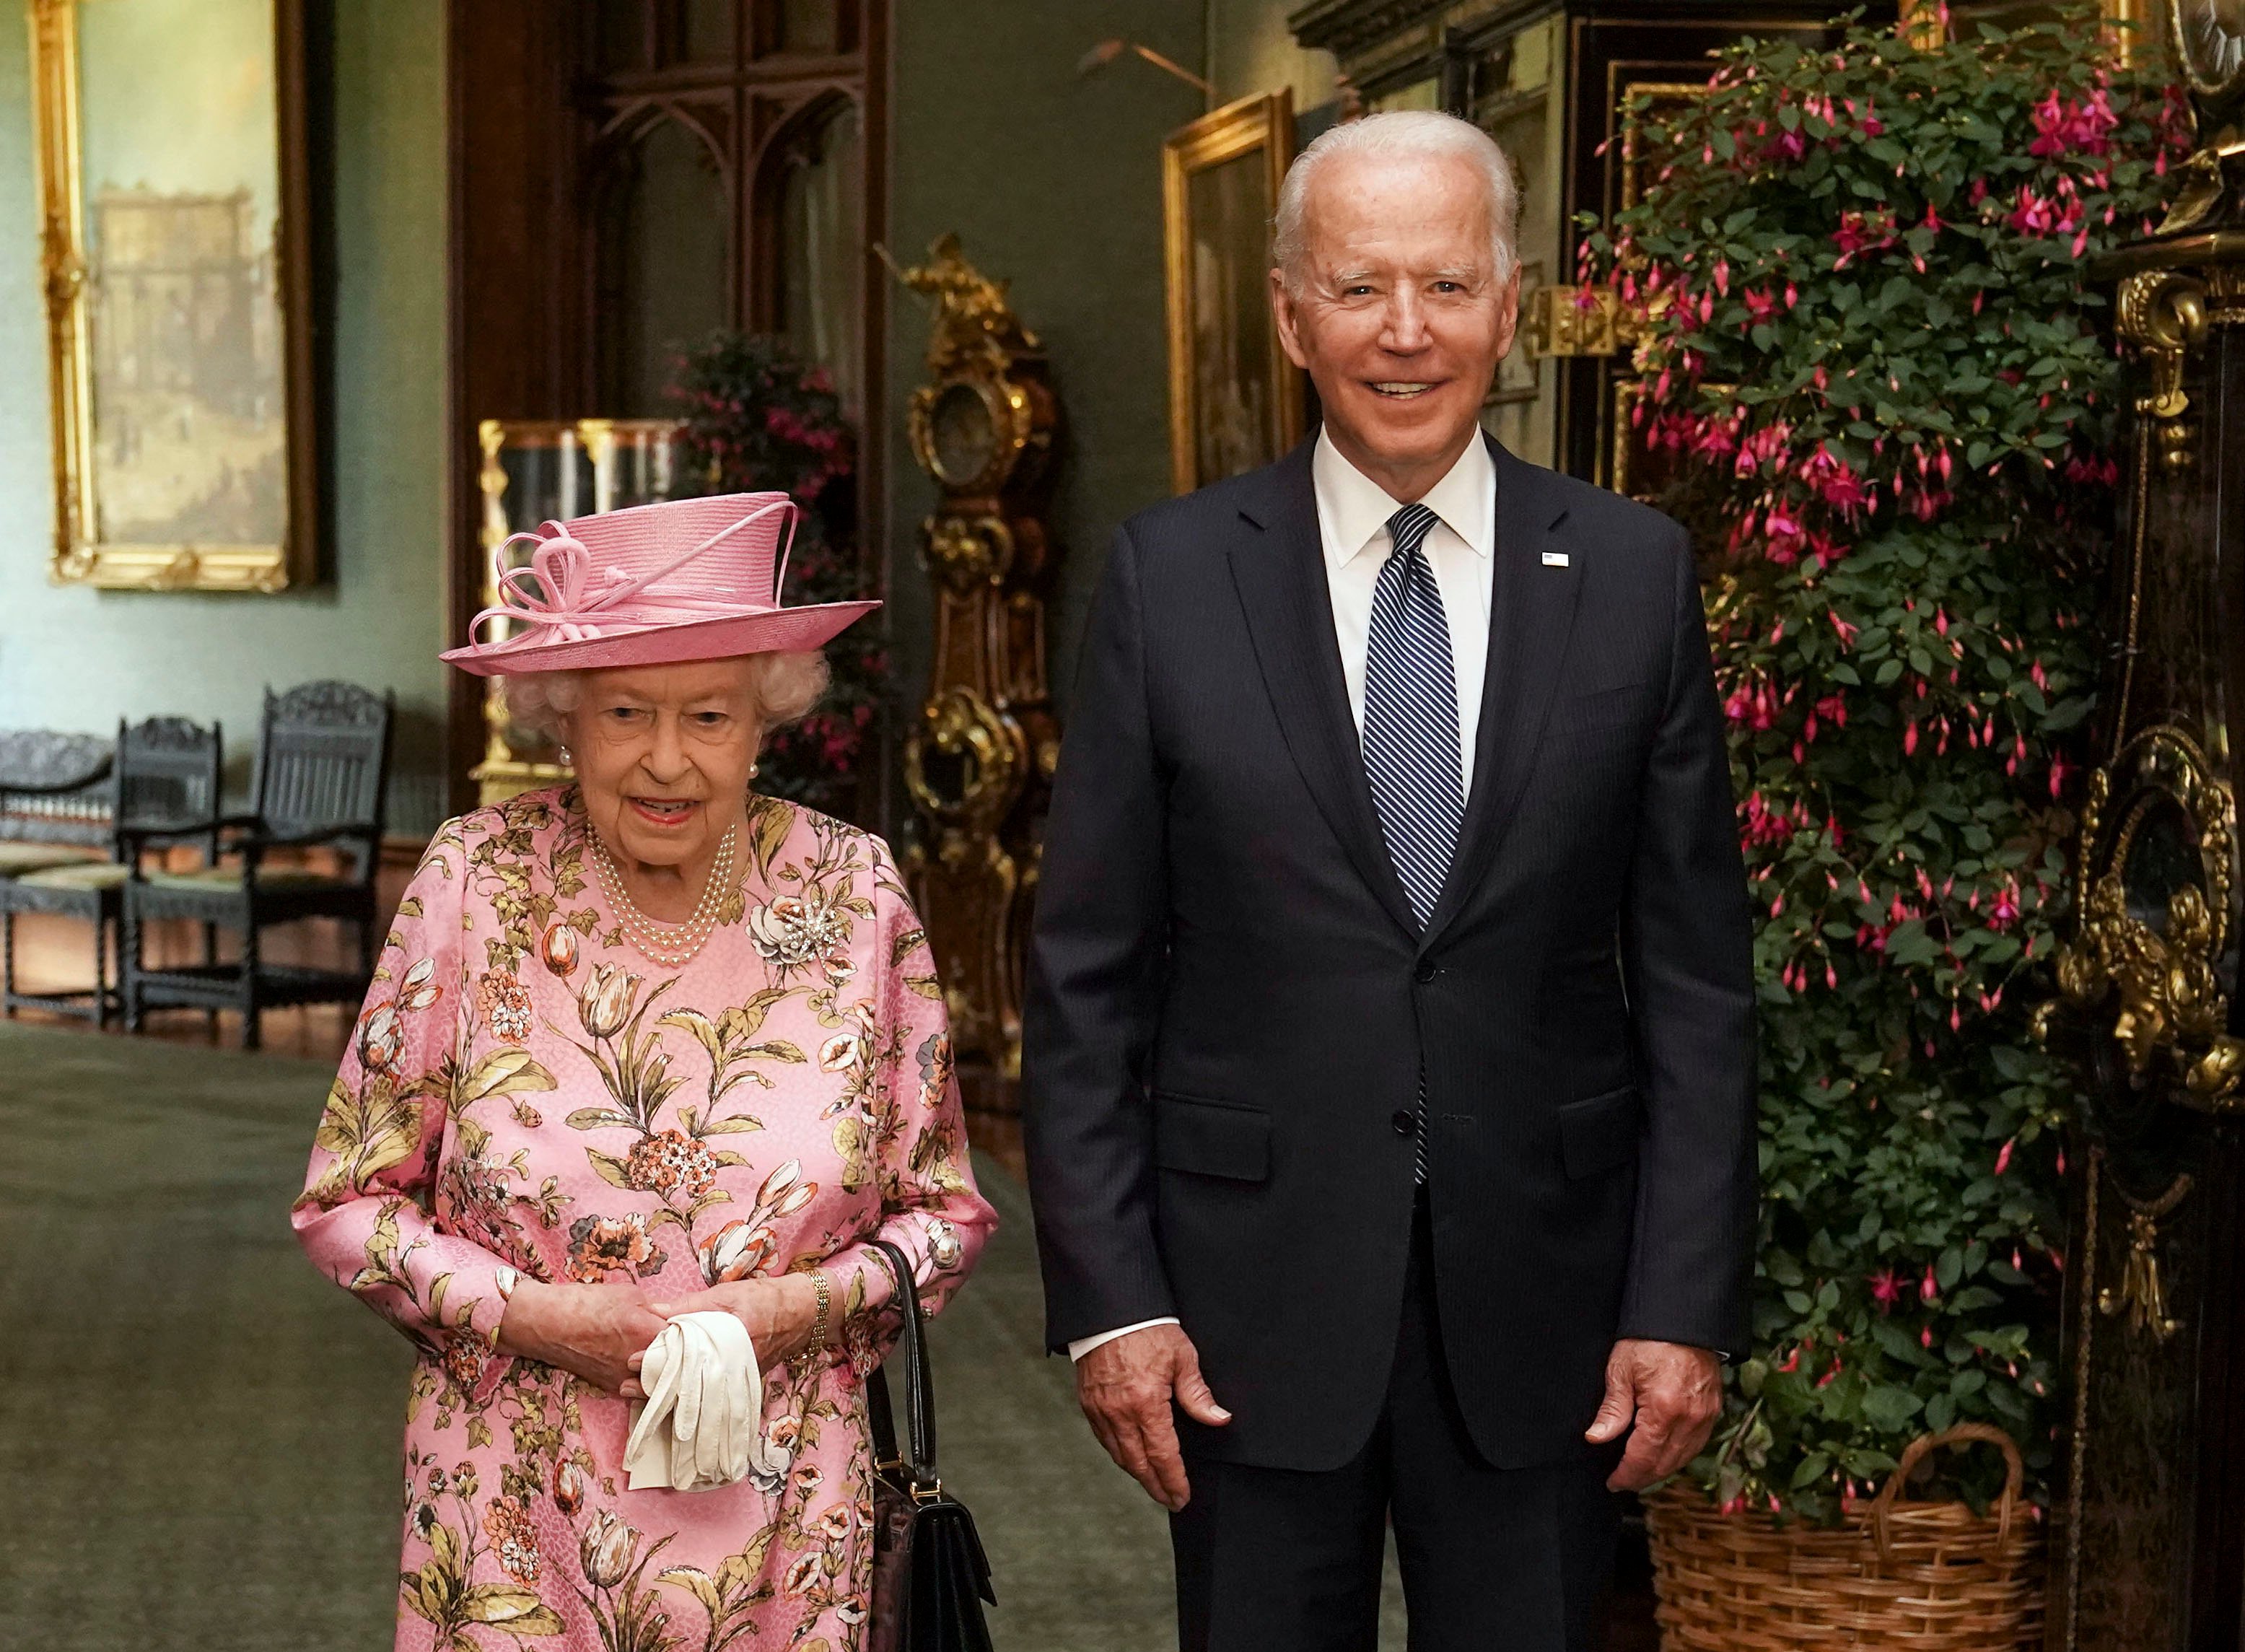 Queen Elizabeth II with U.S. President Joe Biden pose for photo in the Grand Corridor at Windsor Castle